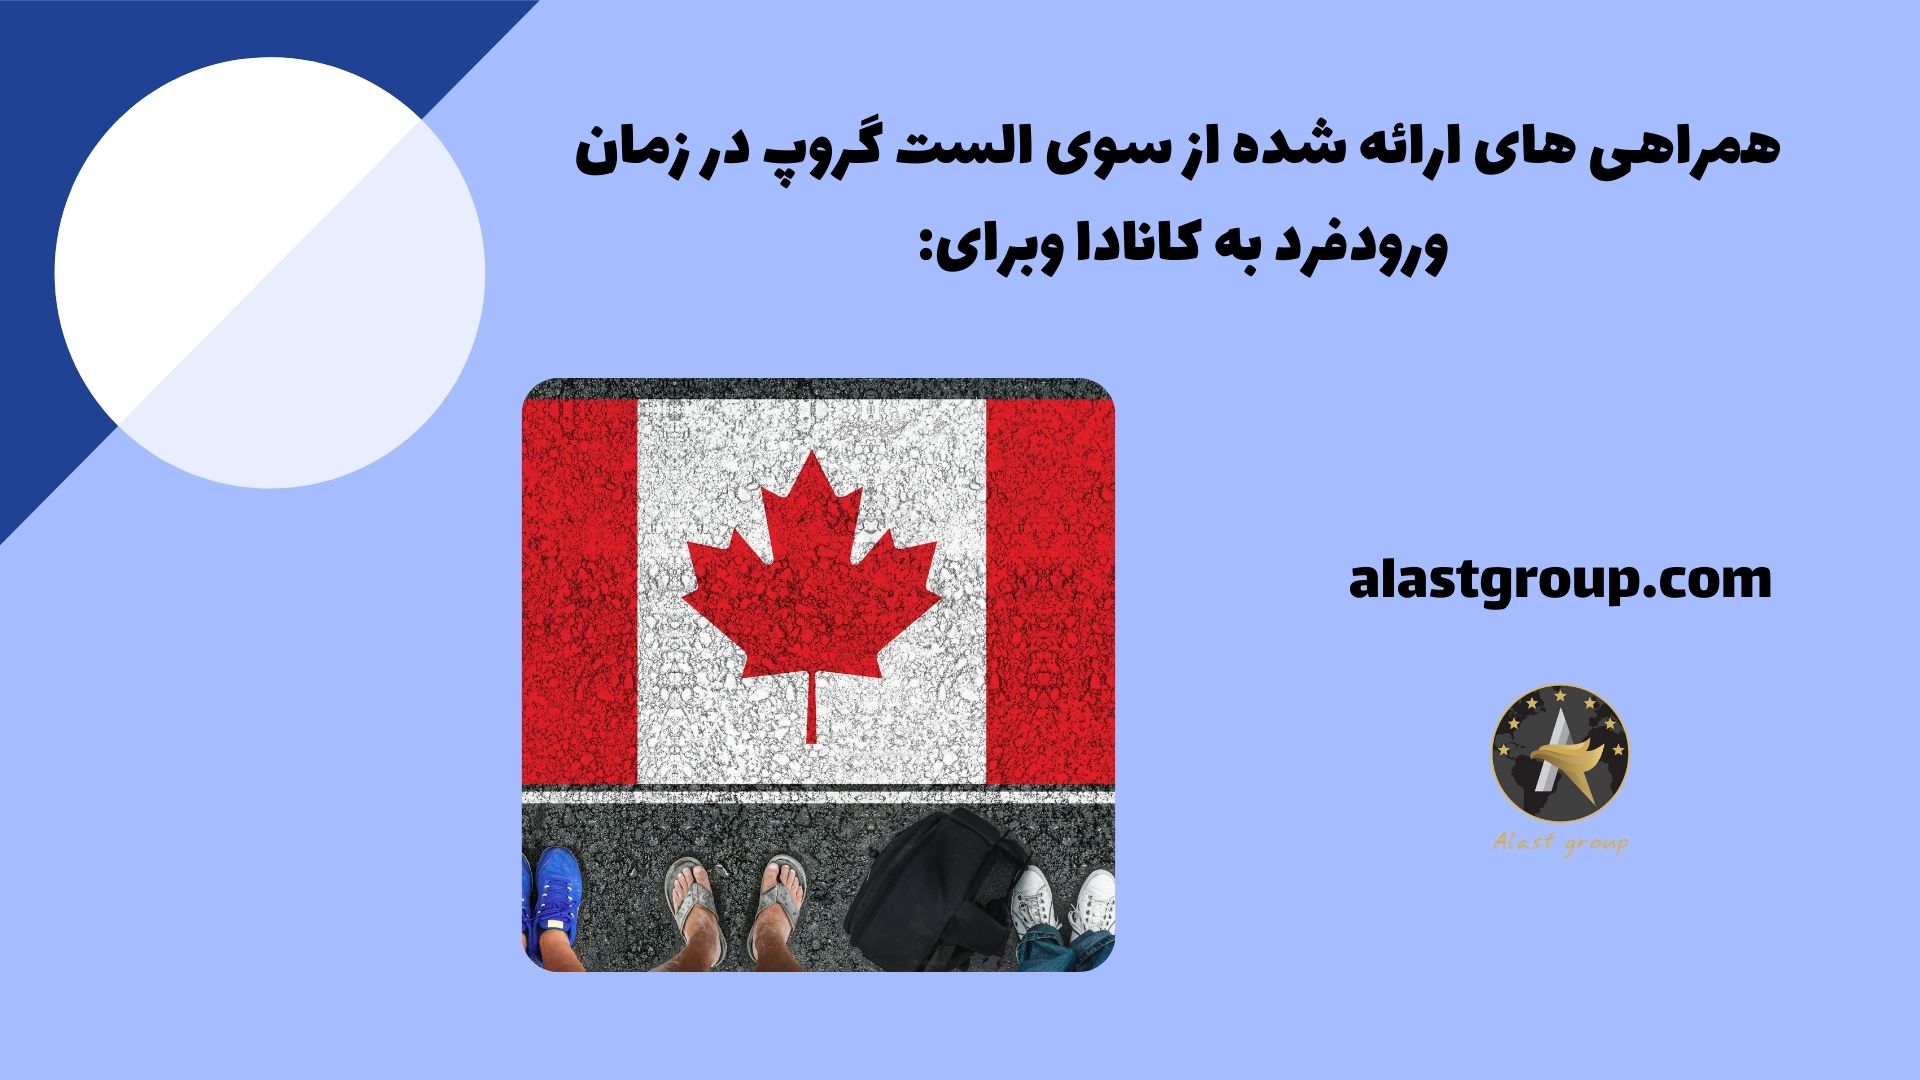 همراهی های ارائه شده از سوی الست گروپ در زمان ورود فرد به کانادا و برای: 